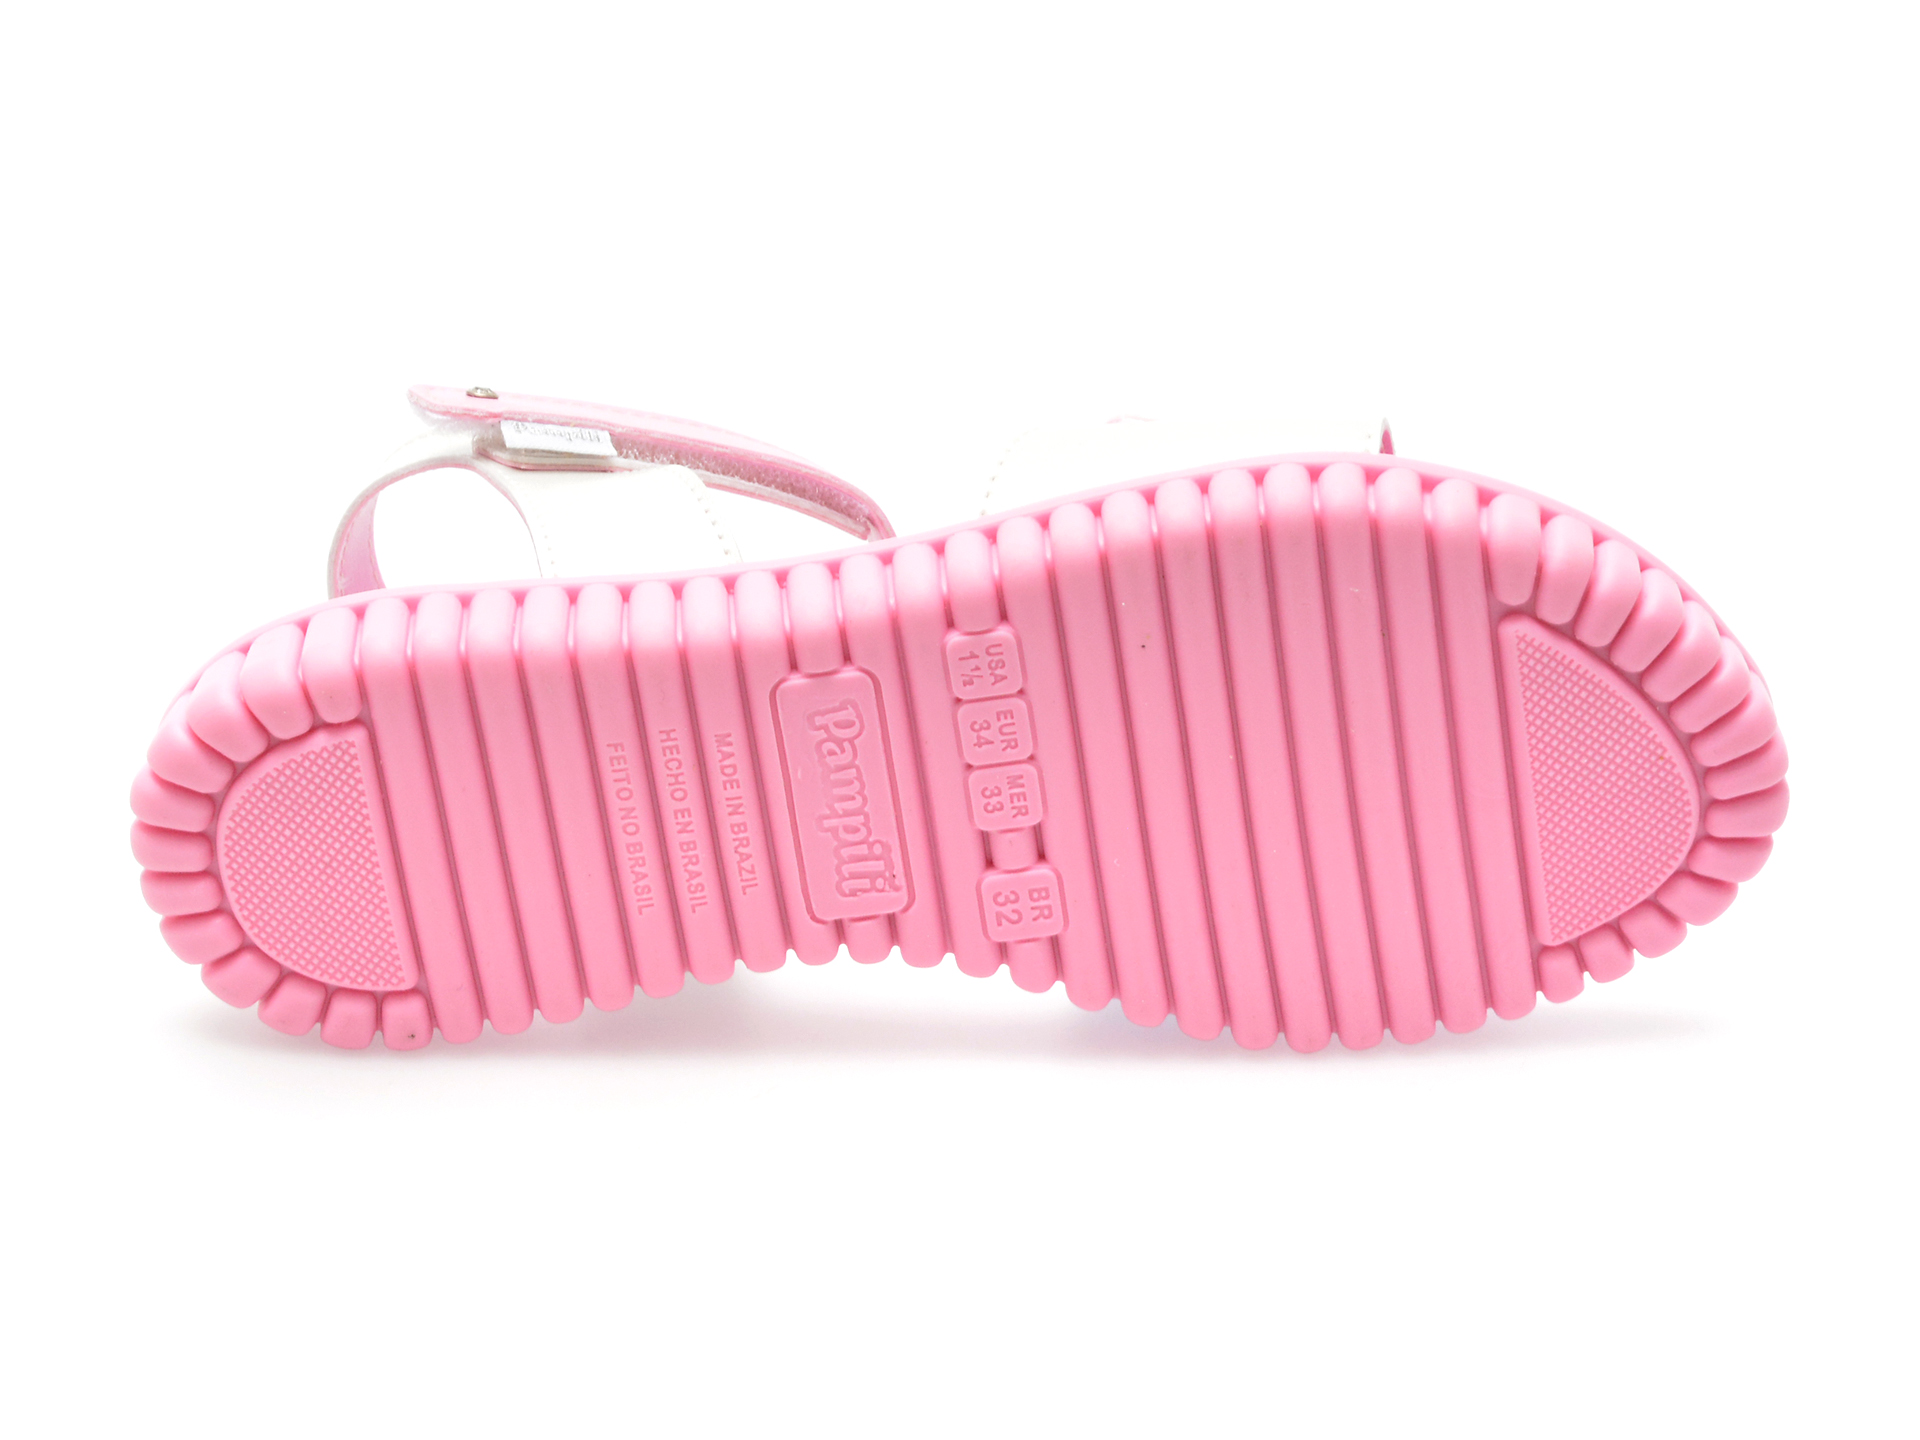 Sandale PAMPILI roz, 123188, din piele ecologica